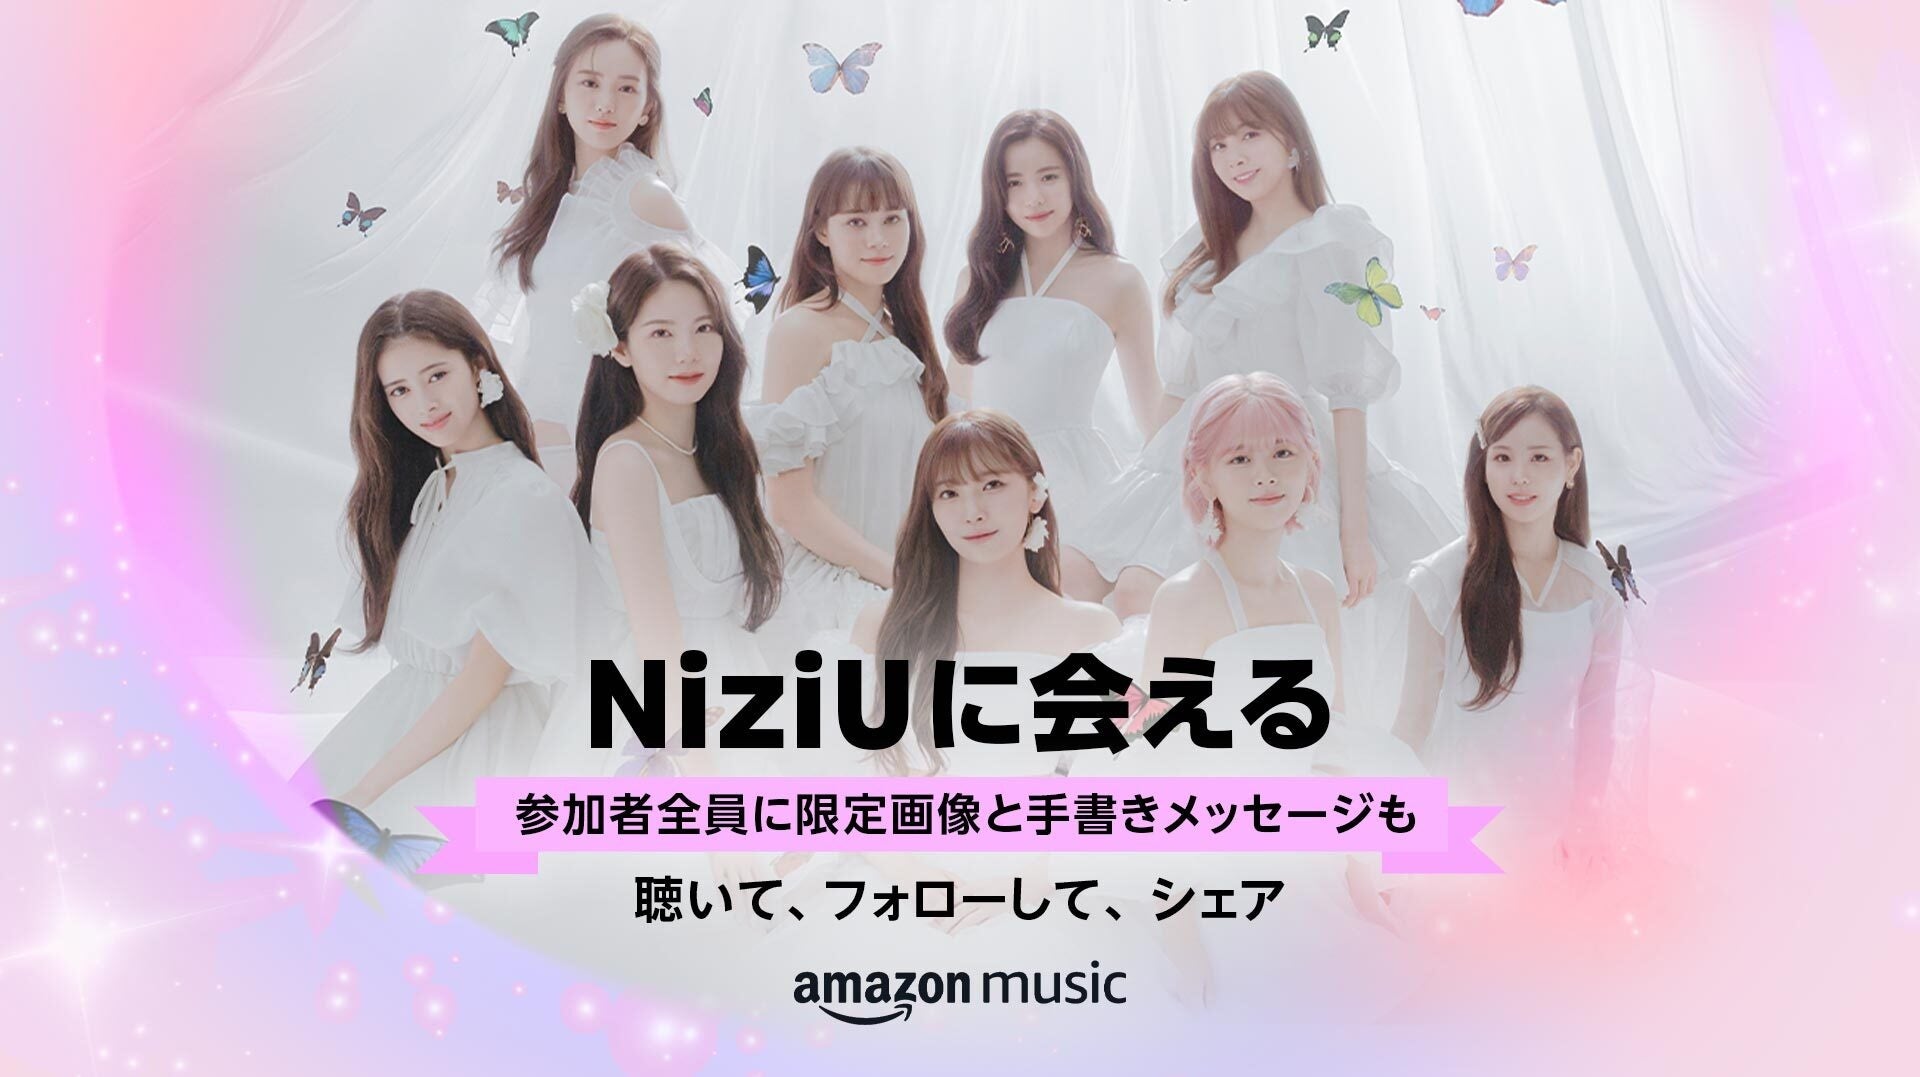 Amazon Music、期間限定のスタンプカード機能を使ったファンとアーティストのつながりを提供する新しい試み「NiziUに会える」キャンペーンを本日より開始